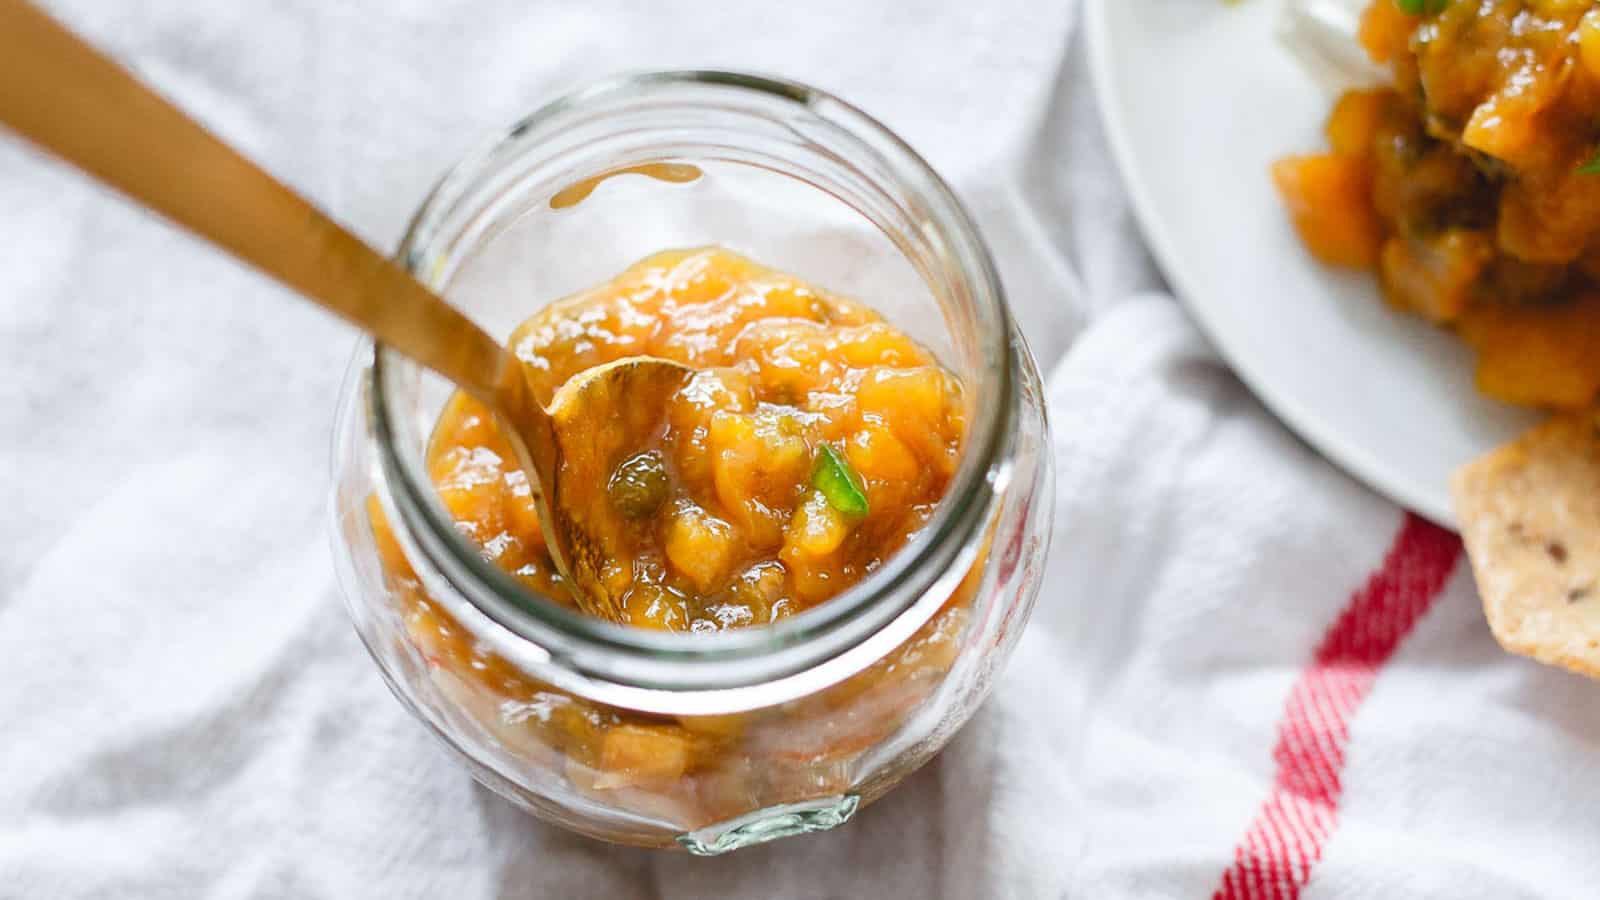 Jalapeño mango jam in a glass jar with a spoon.